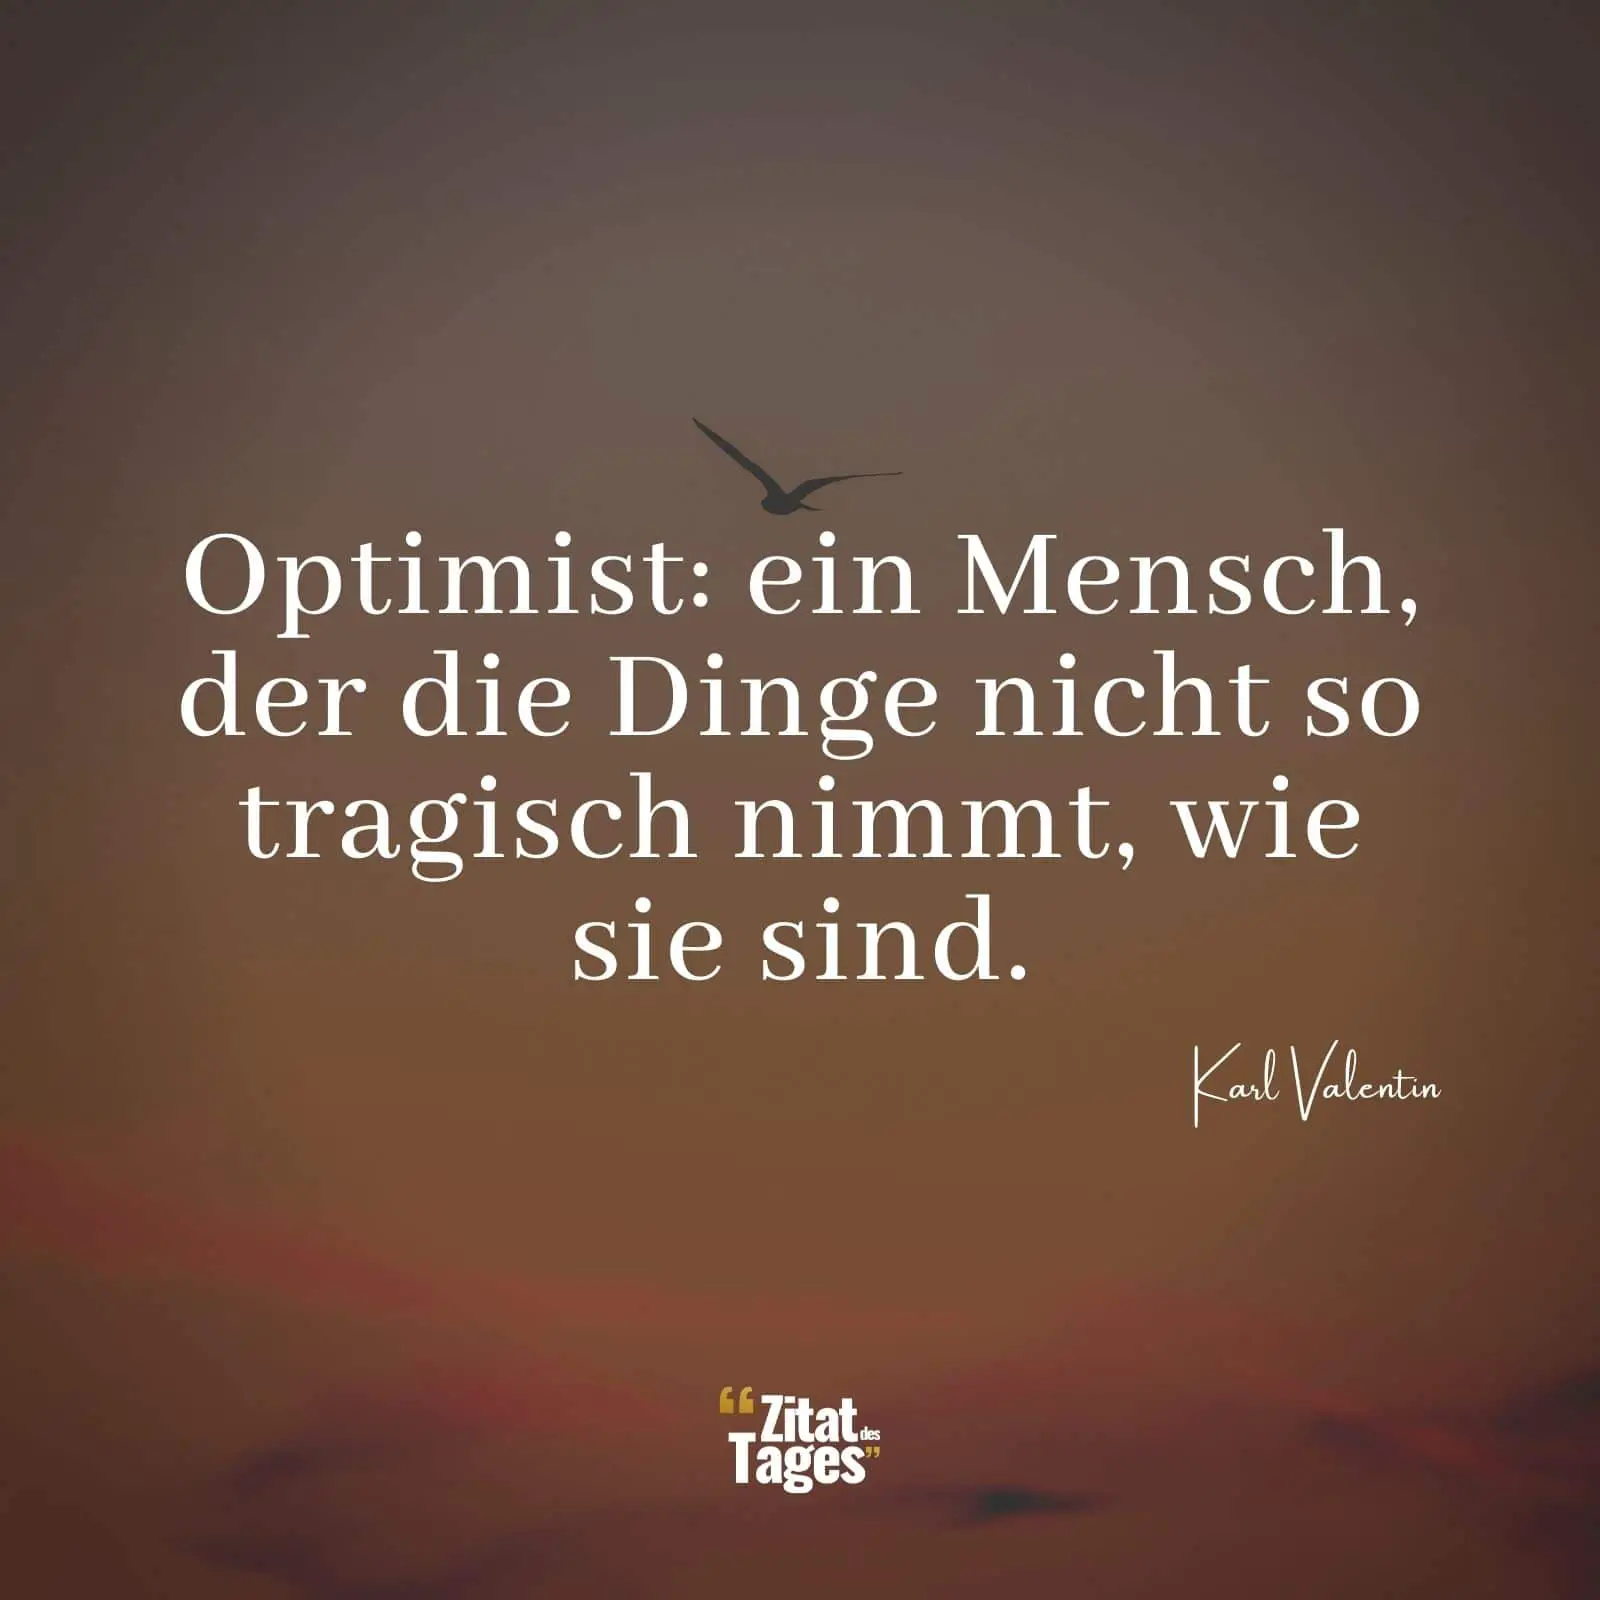 Optimist: ein Mensch, der die Dinge nicht so tragisch nimmt, wie sie sind. - Karl Valentin